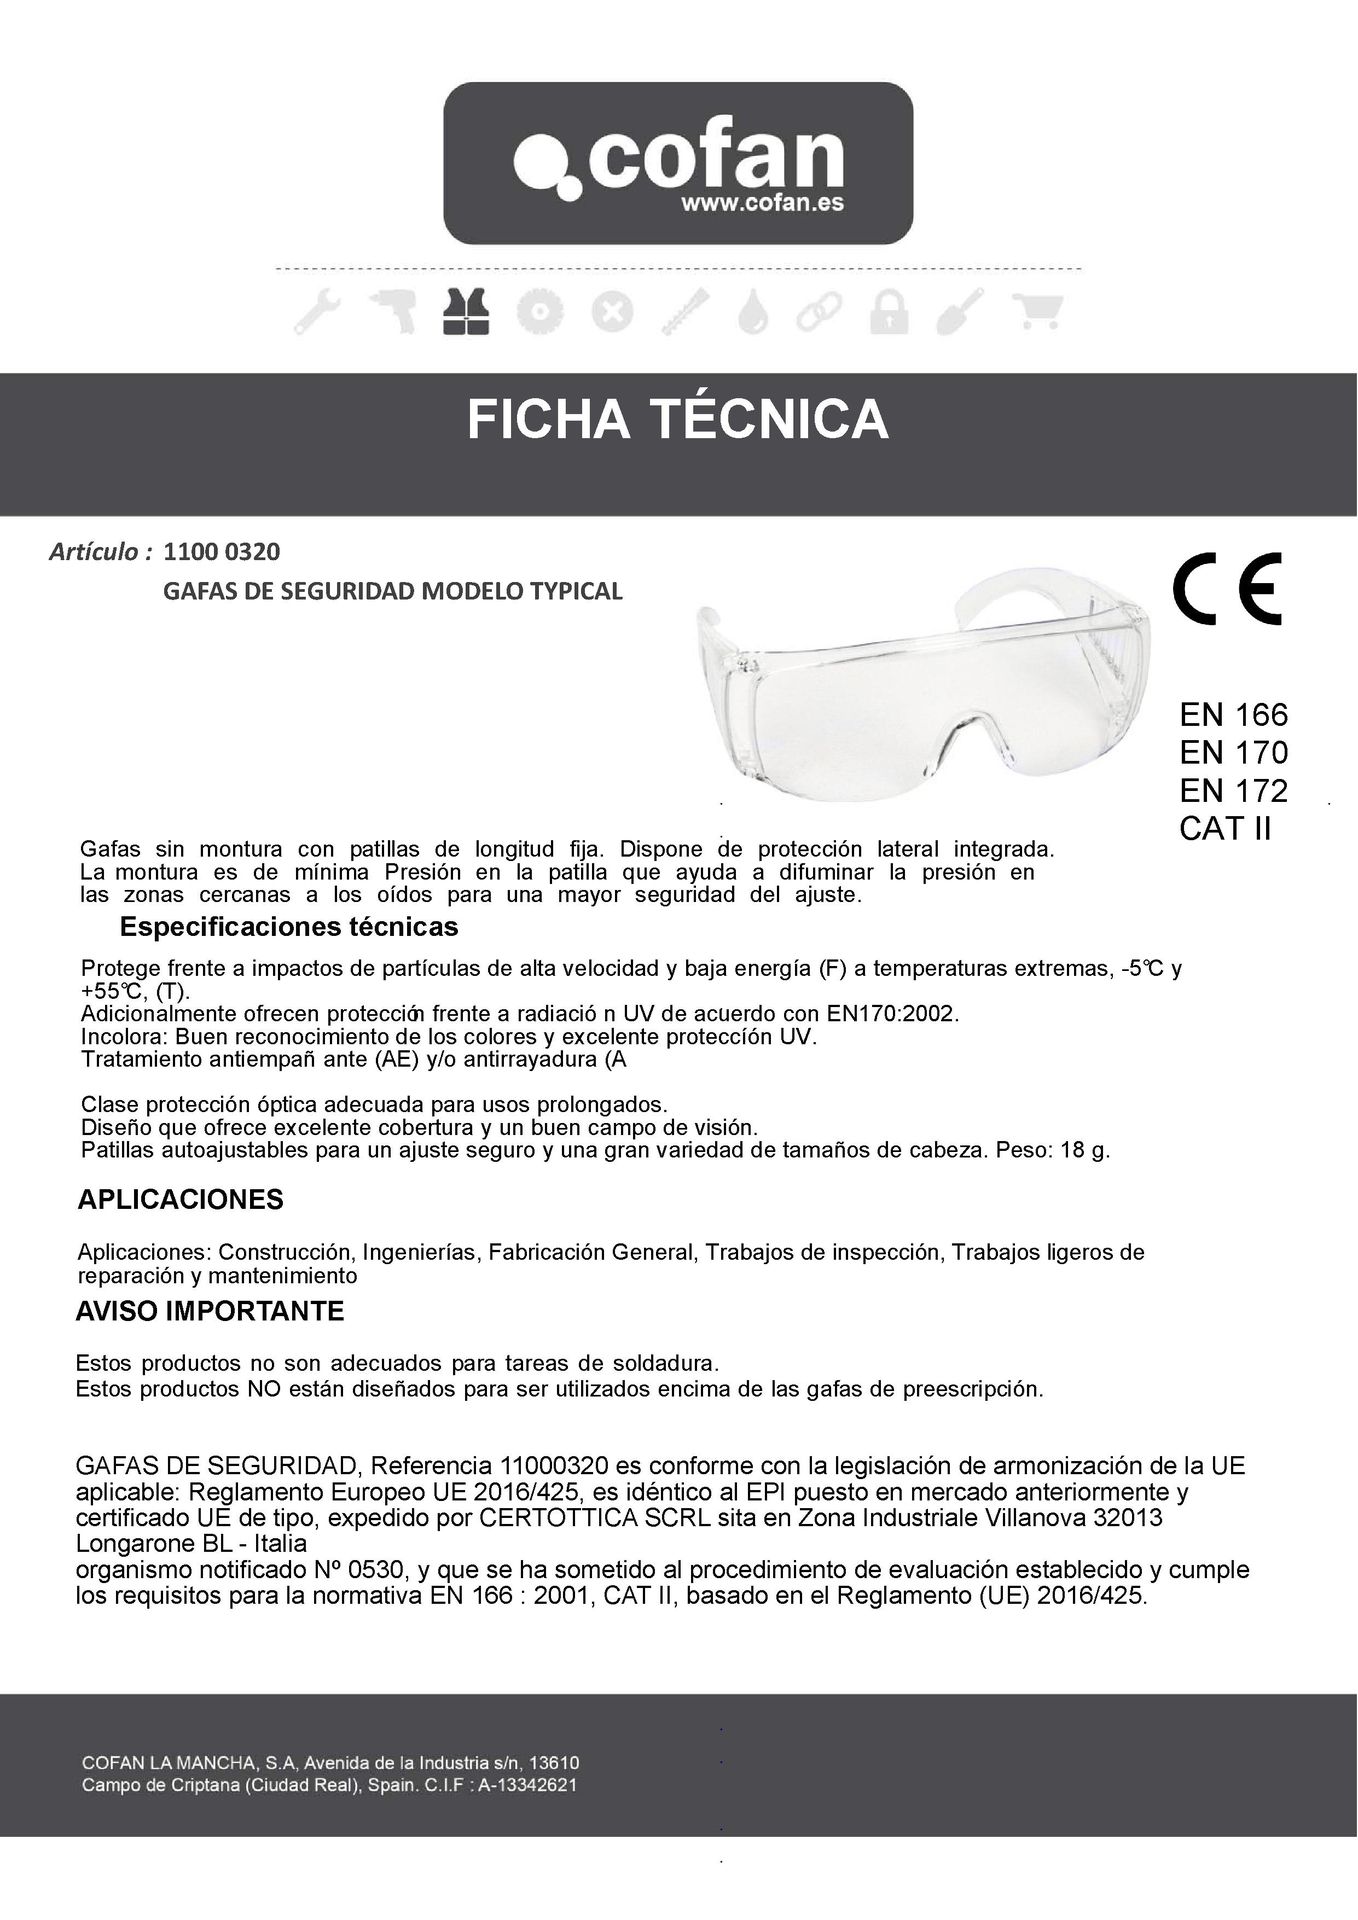 Ficha Técnica de Gafas de Seguridad Typical Ref. 11000320